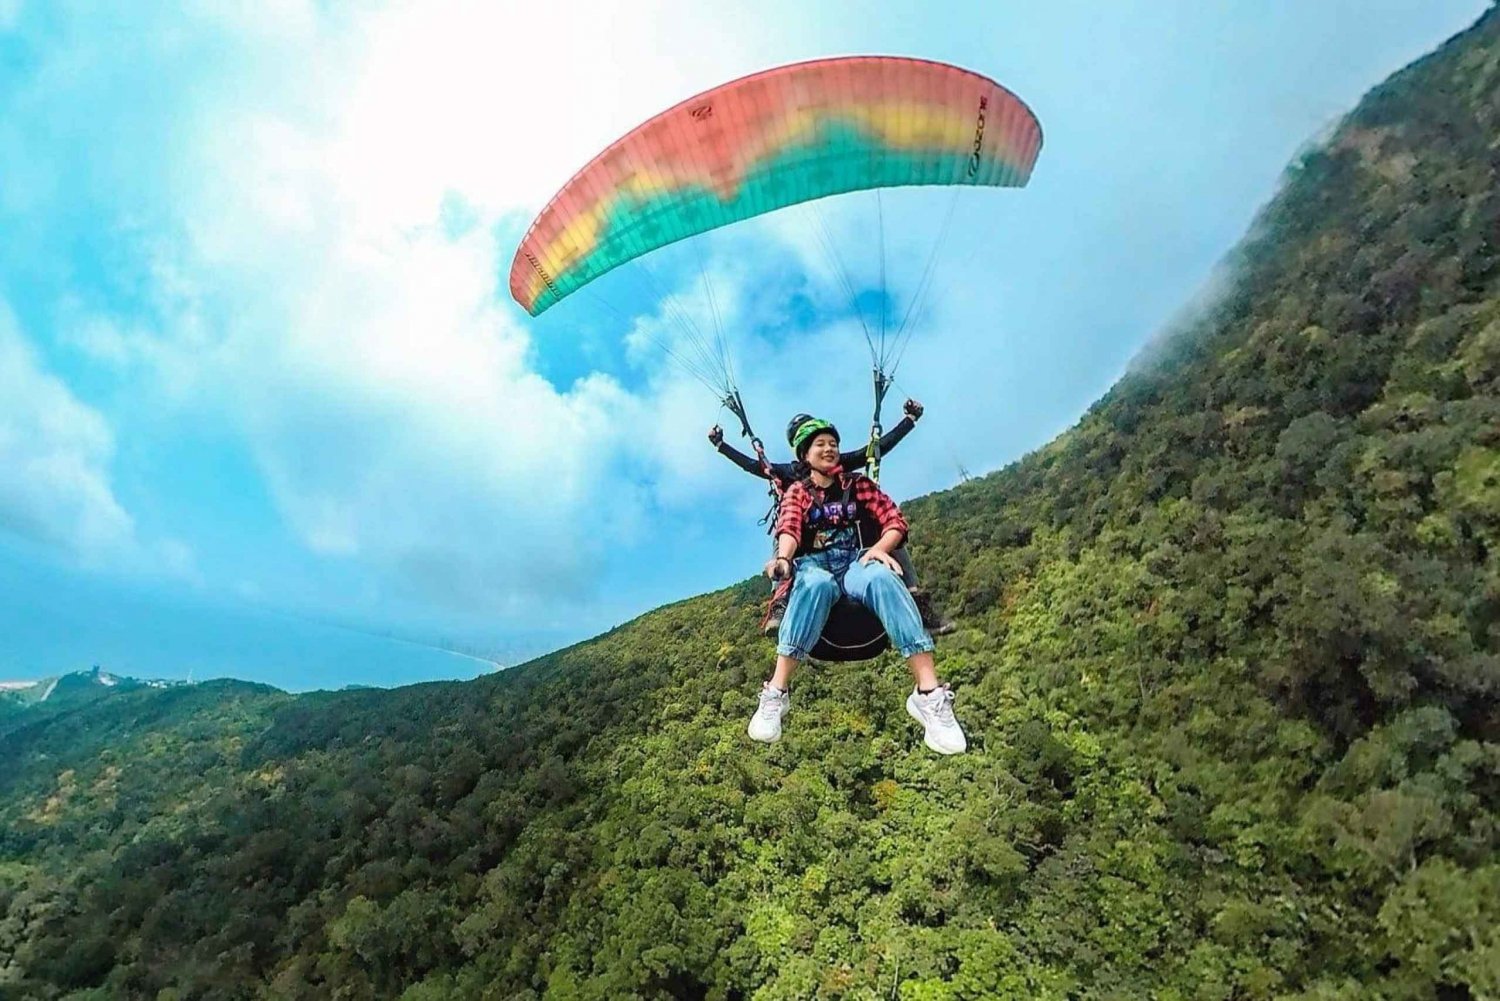 Da Nang: Paragliding-tur